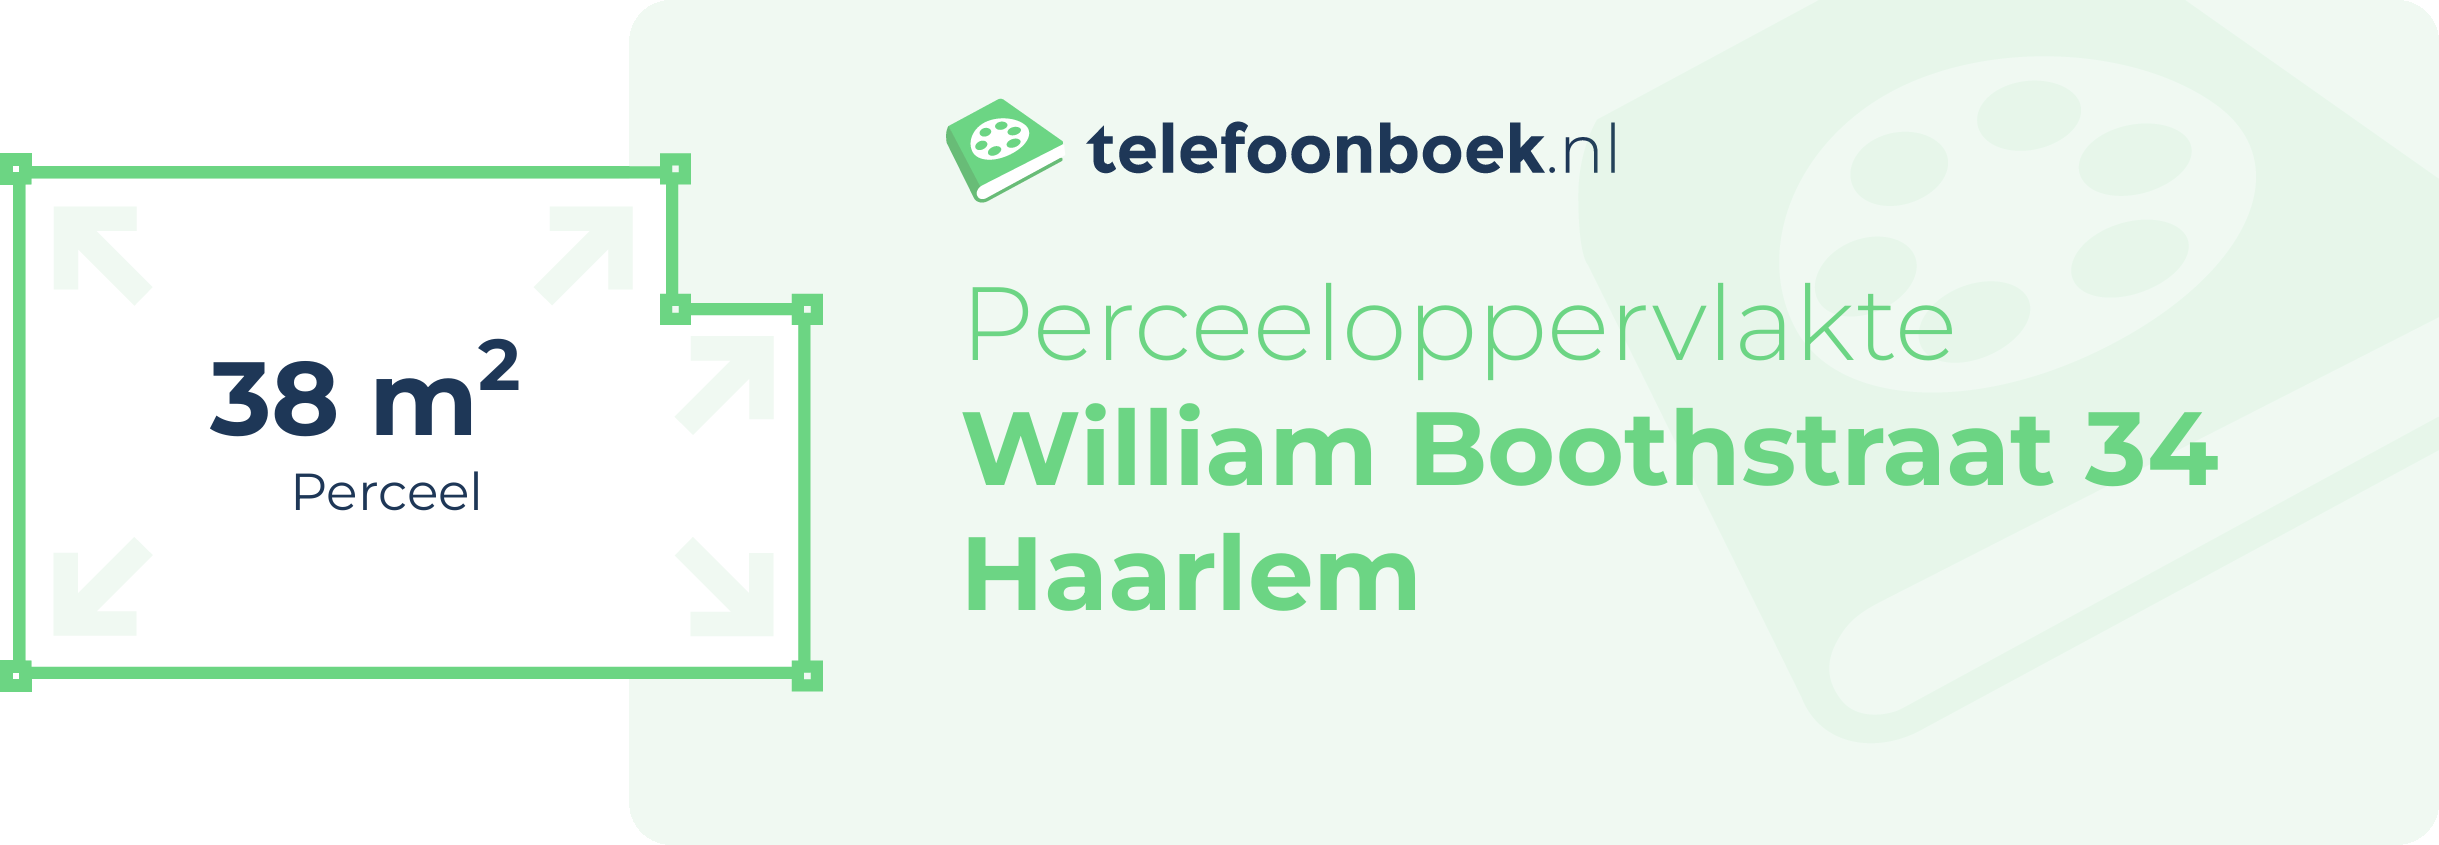 Perceeloppervlakte William Boothstraat 34 Haarlem